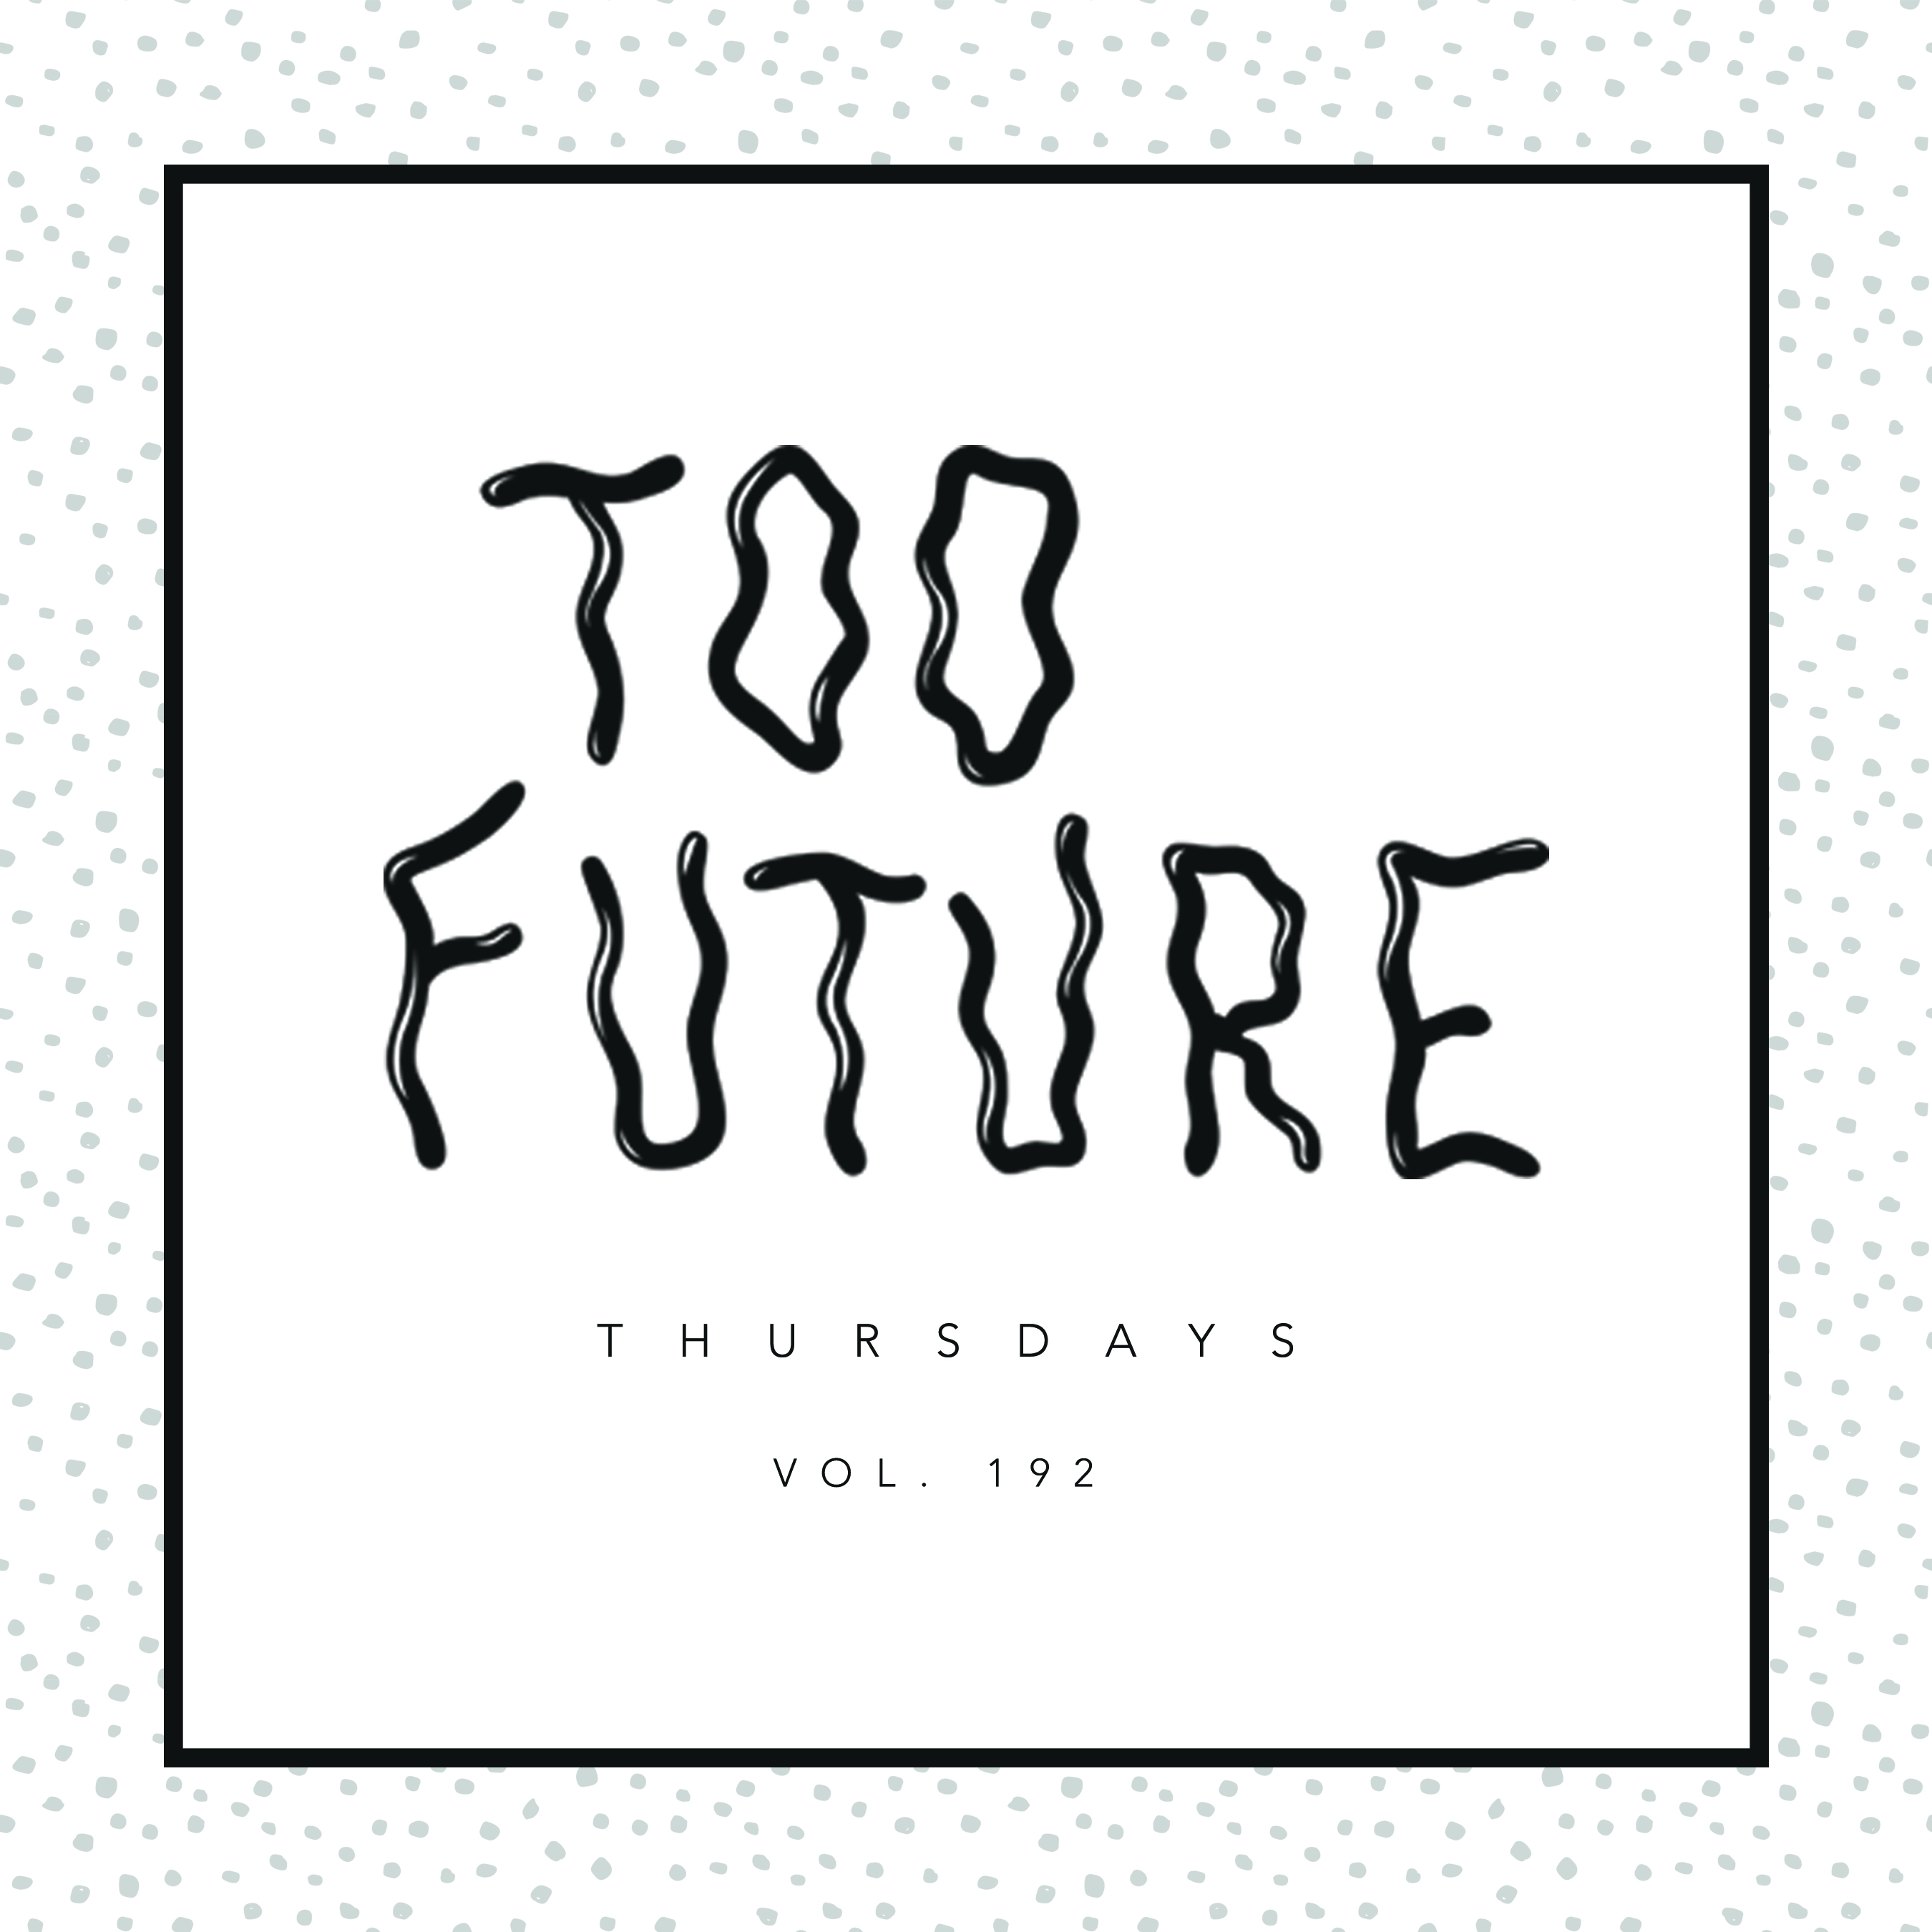 too-future-thursdays-vol-192